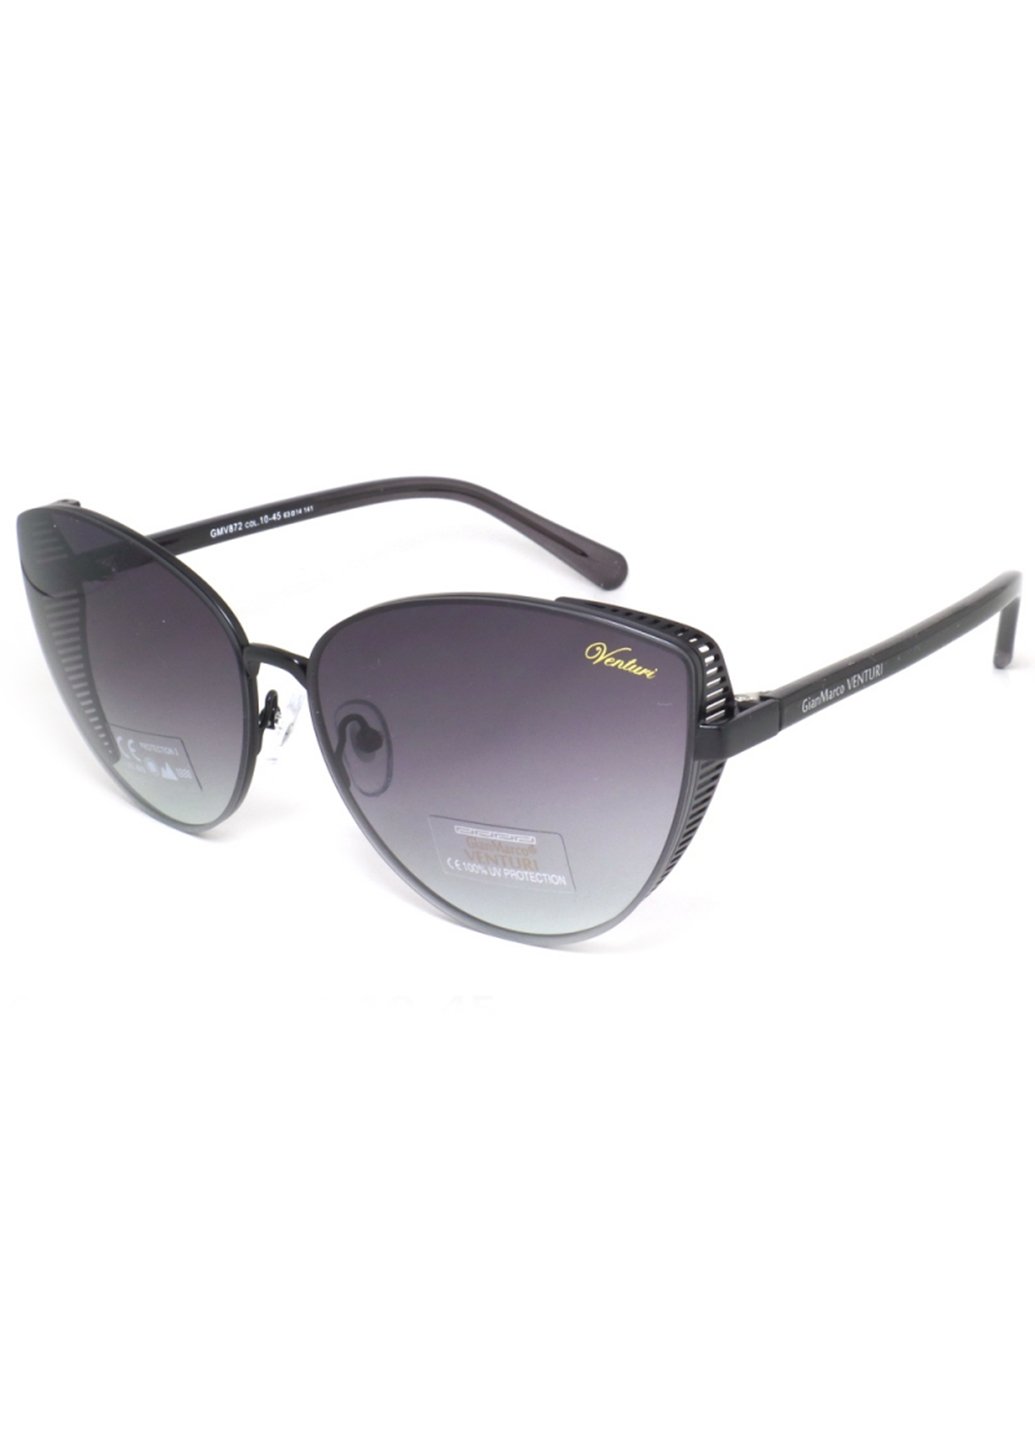 Купить Женские солнцезащитные очки Gian Marco VENTURI GMV872 130005 - Фиолетовый в интернет-магазине